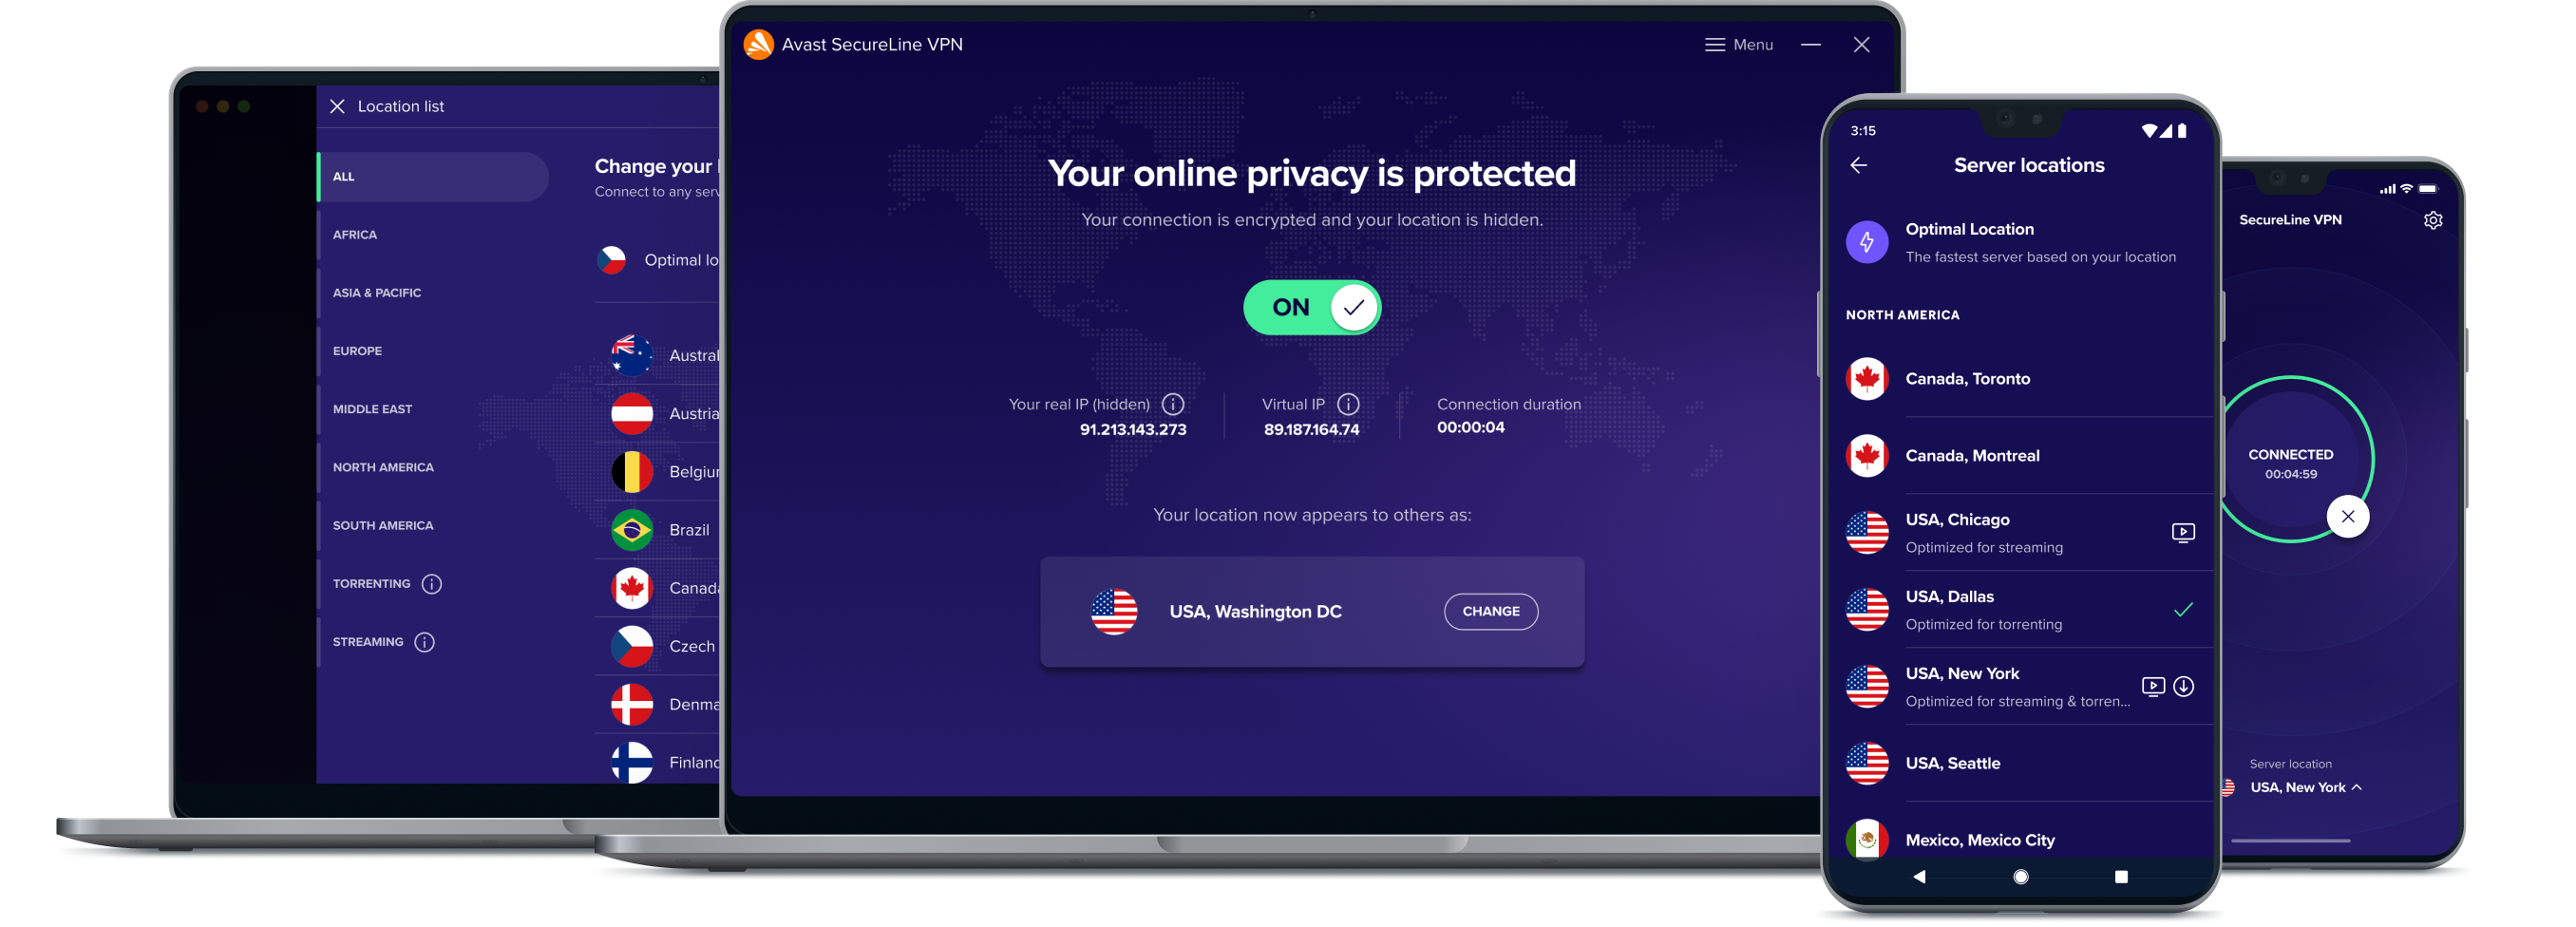 Få større frihet på nettet med VPN-tjenesten vår